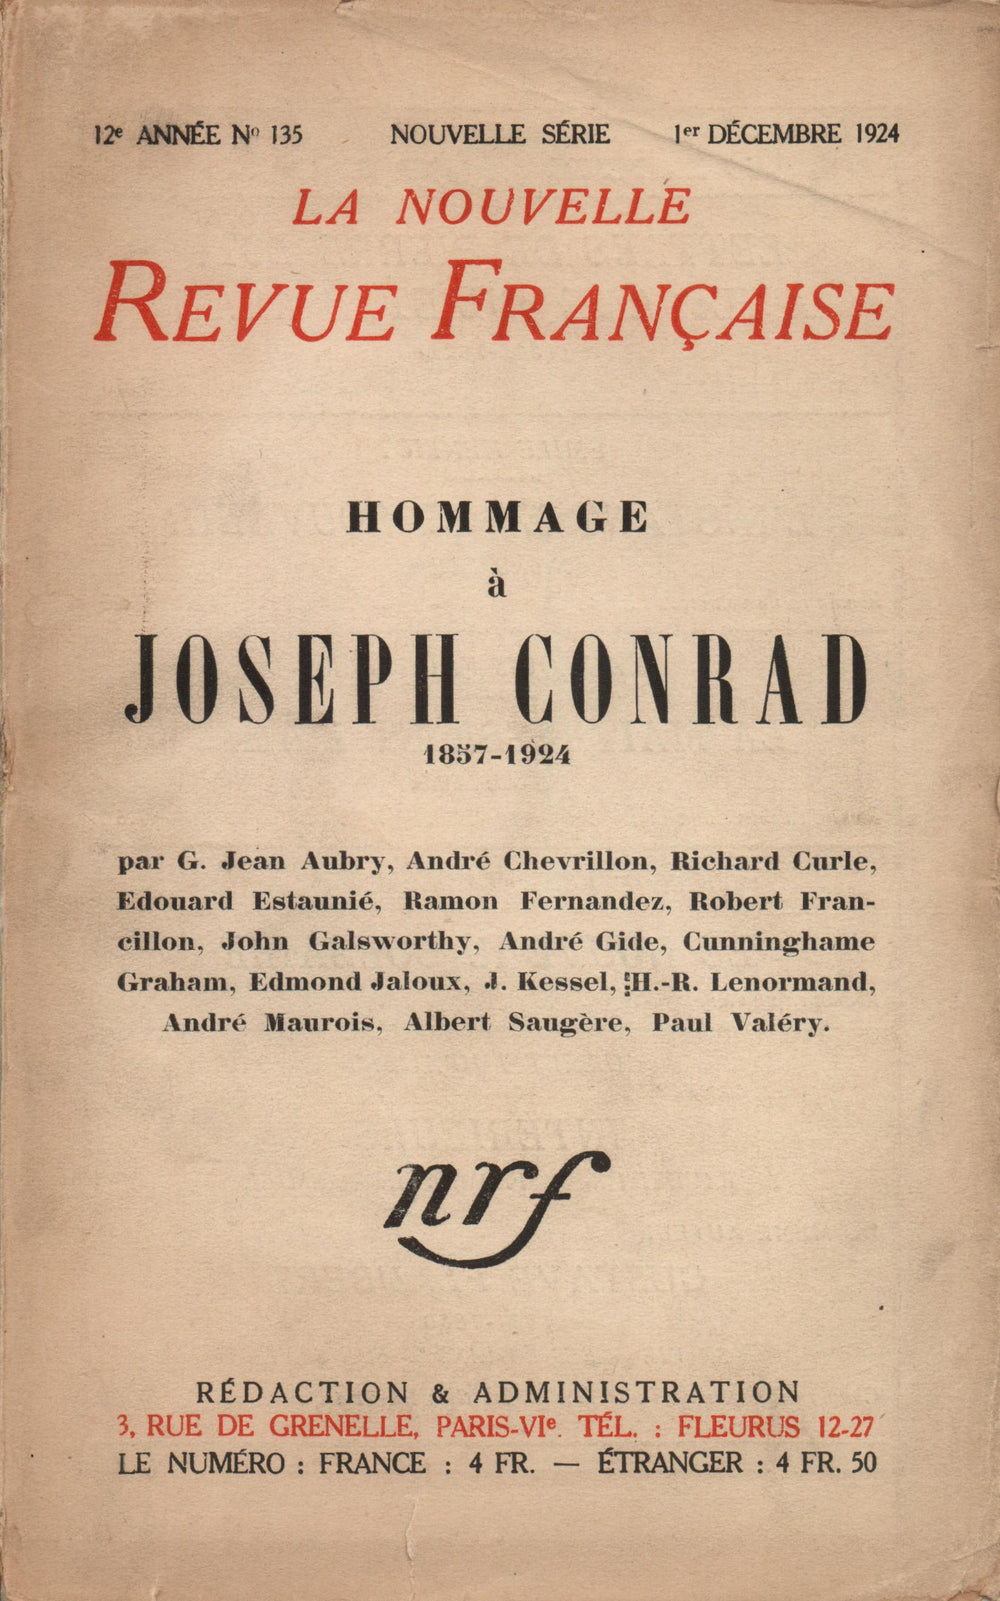 Hommage ŕ Joseph Conrad (1857-1924) N' 135 (Décembre 1924)